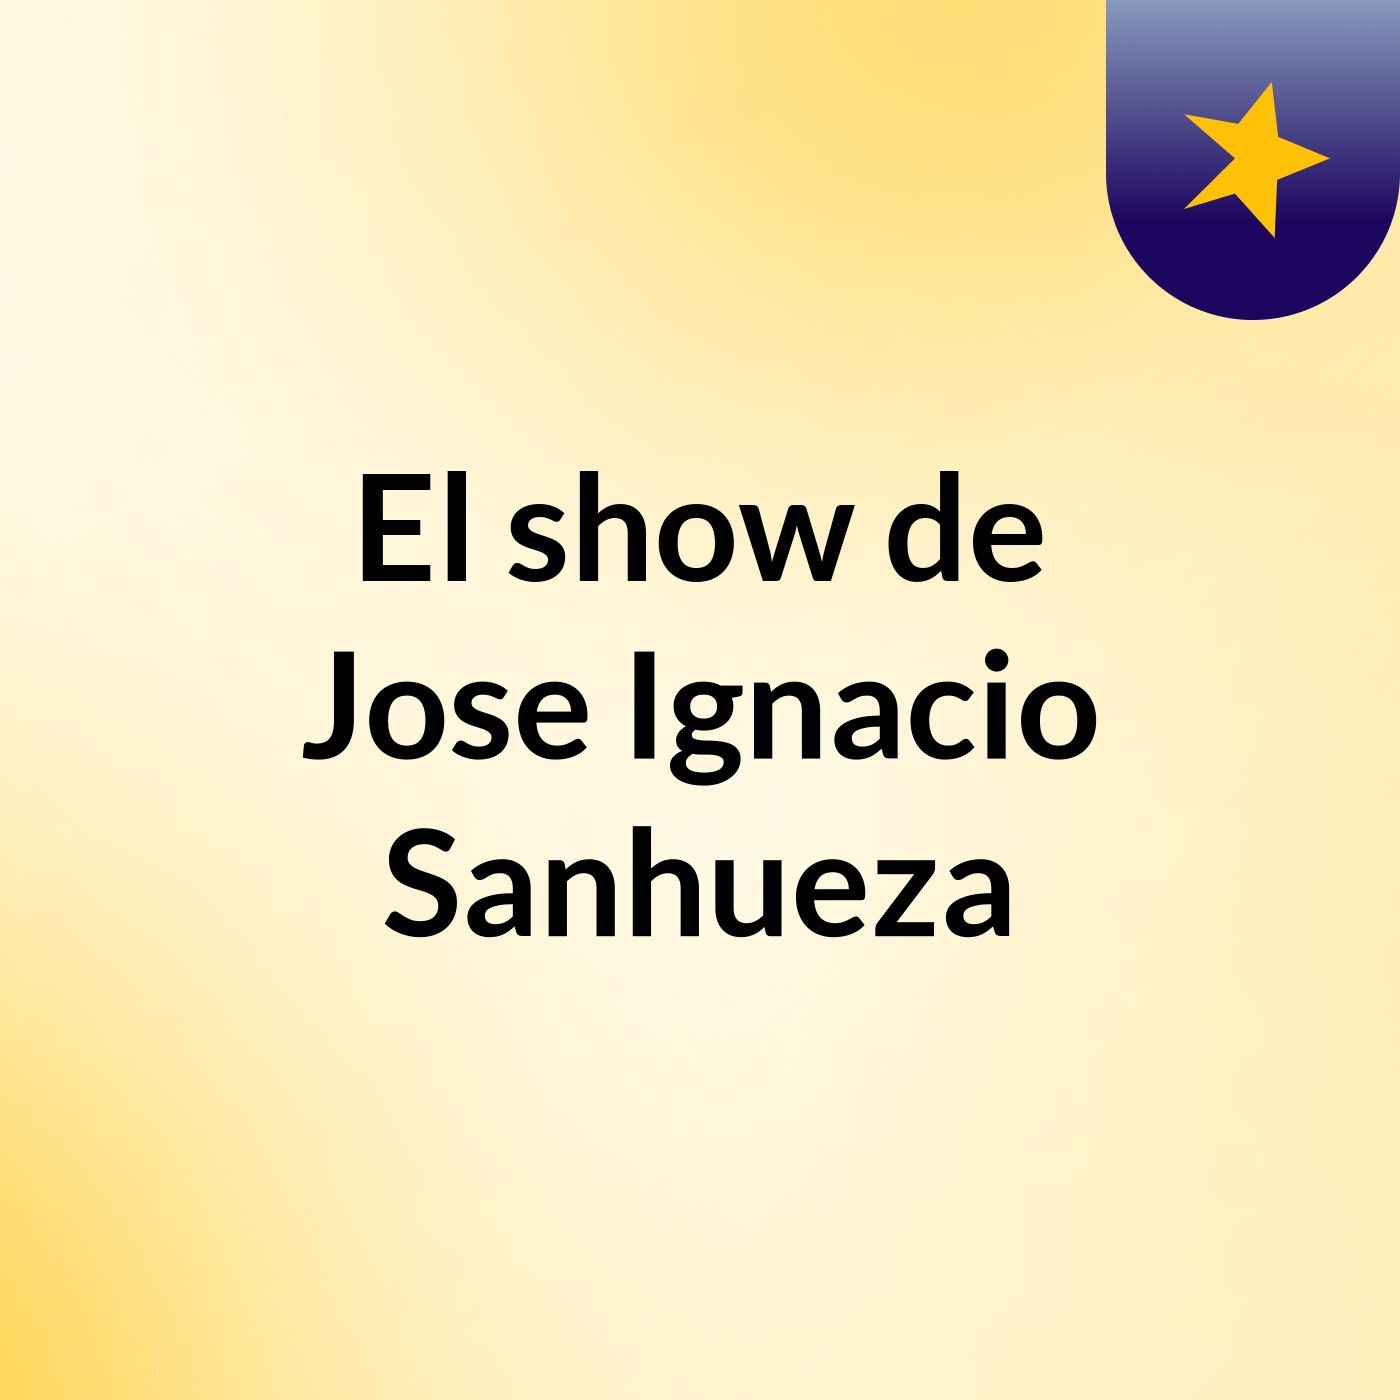 El show de Jose Ignacio Sanhueza